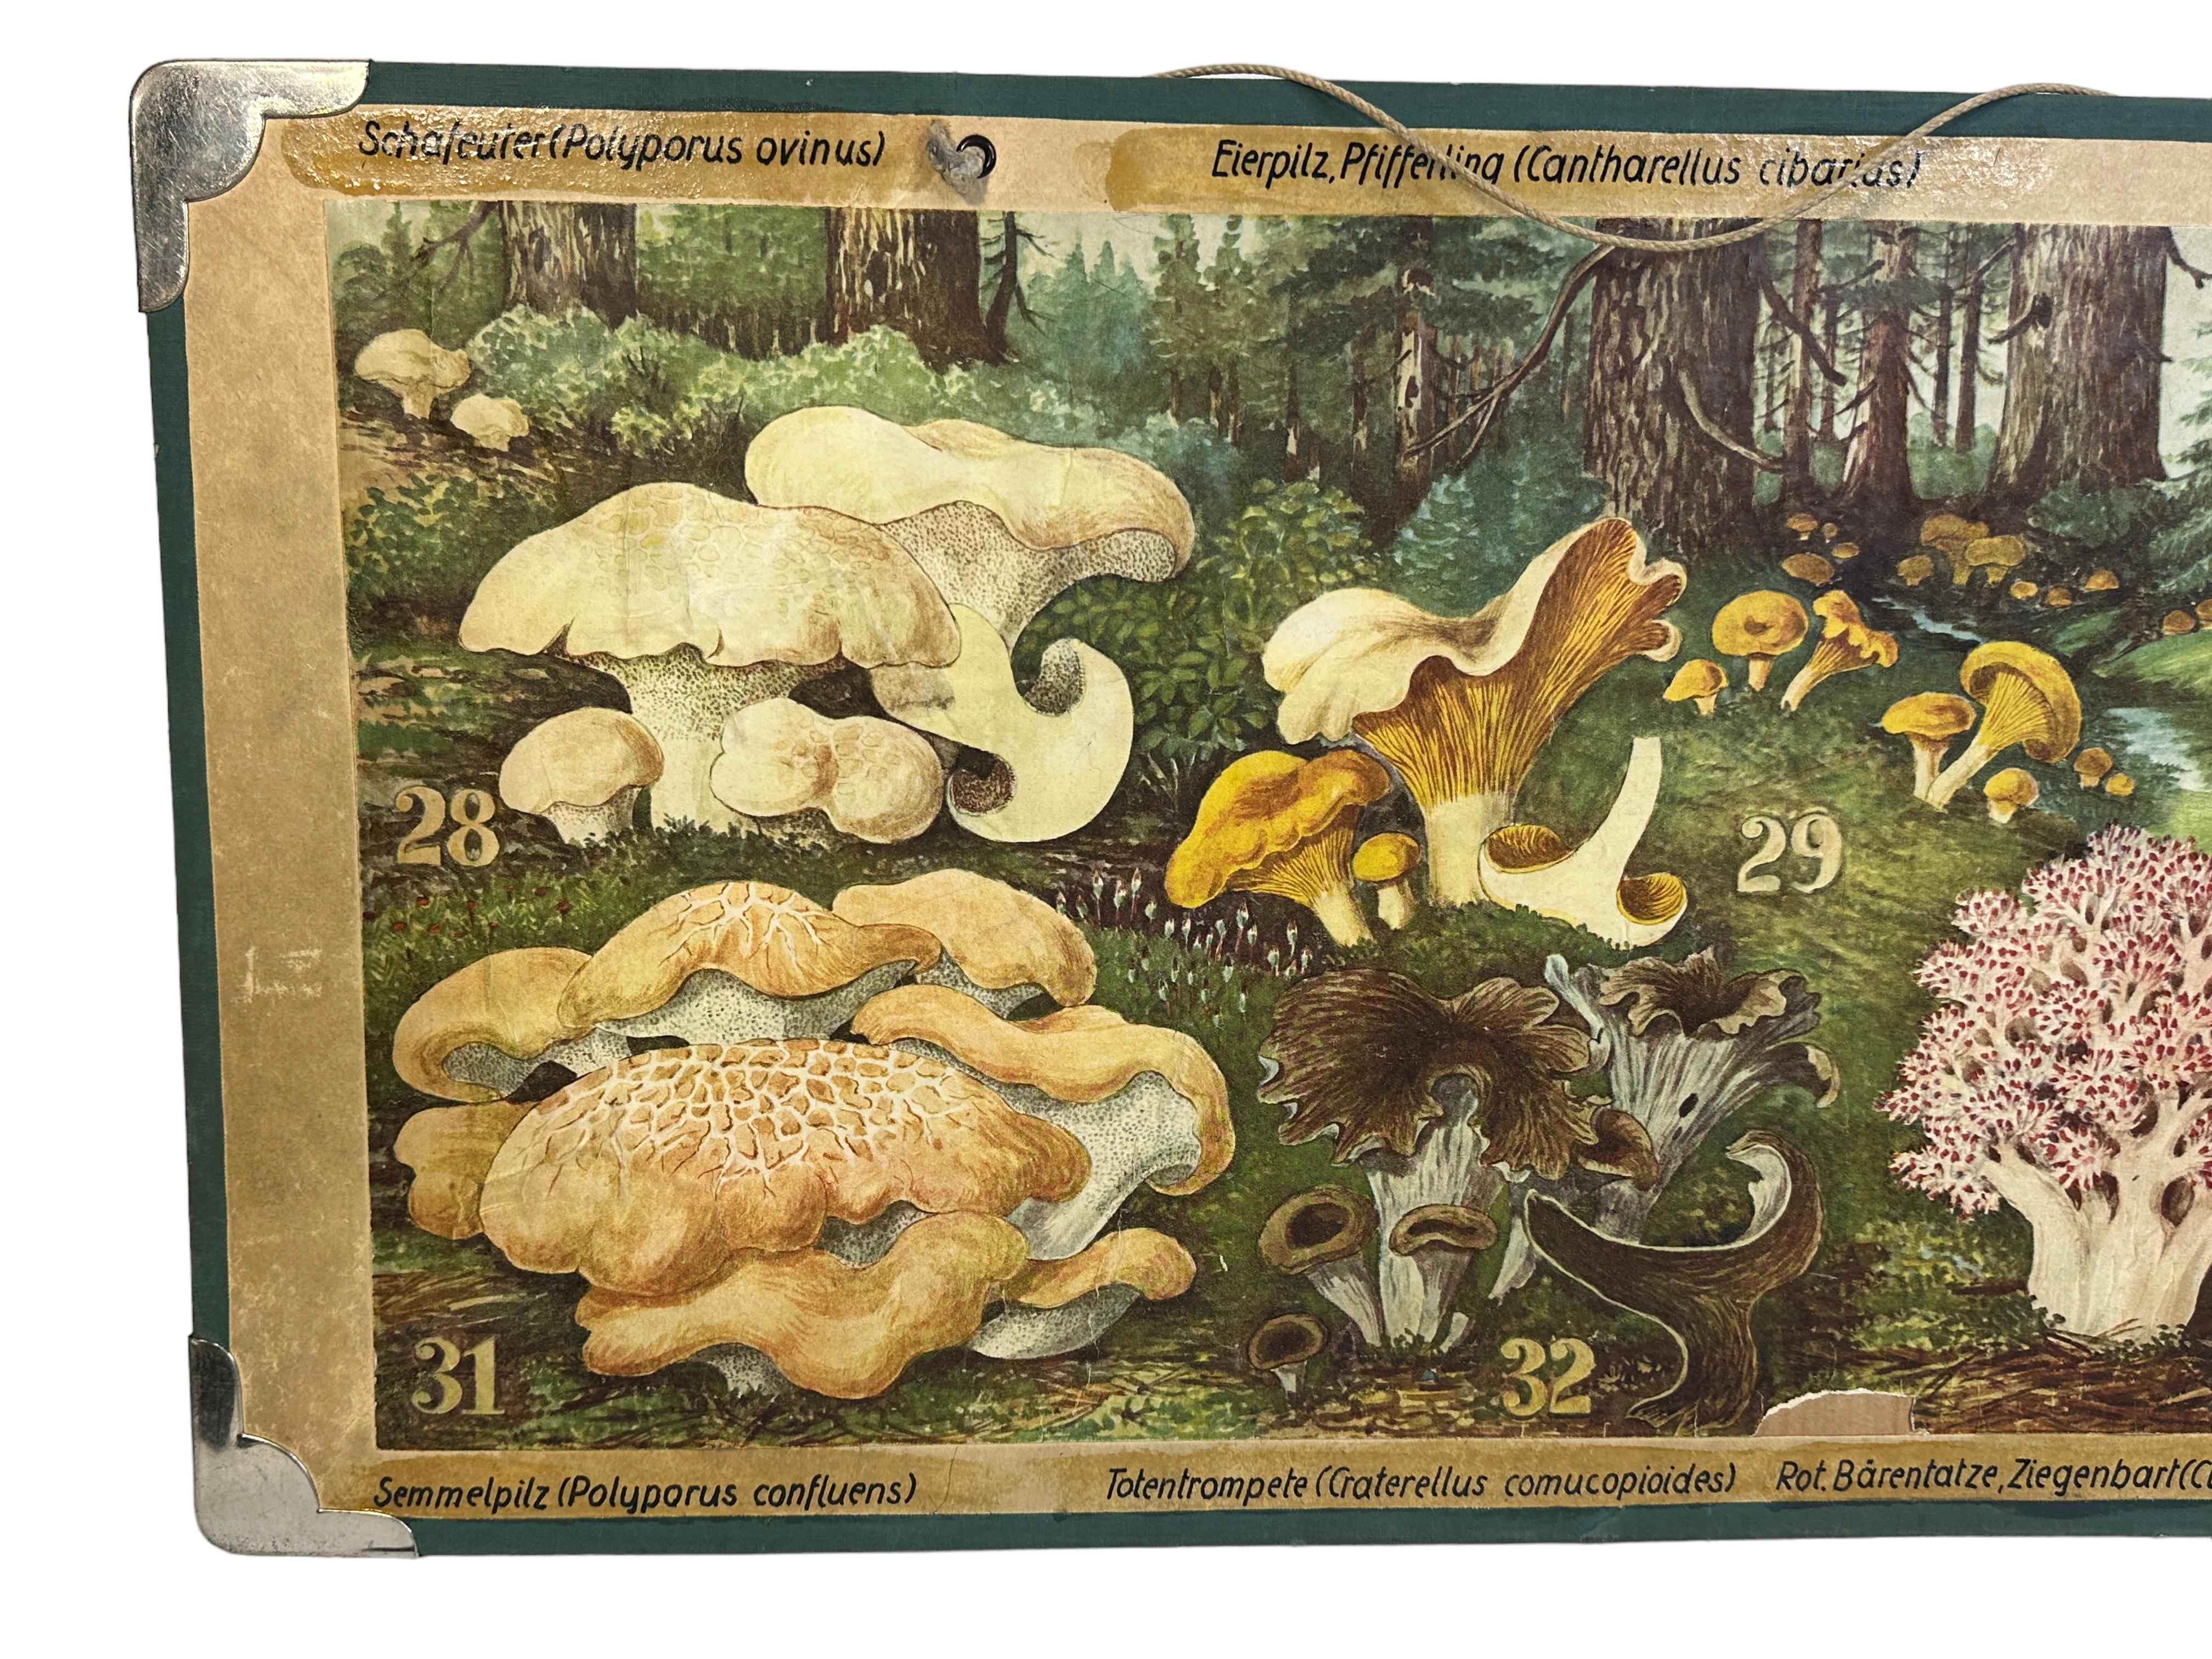 Ce tableau mural vintage rare montre différents types de champignons, qui sont originaires d'Europe centrale. Ce type de tableau mural est utilisé comme matériel pédagogique dans les écoles allemandes. Impression colorée sur carton renforcé. 
Ce